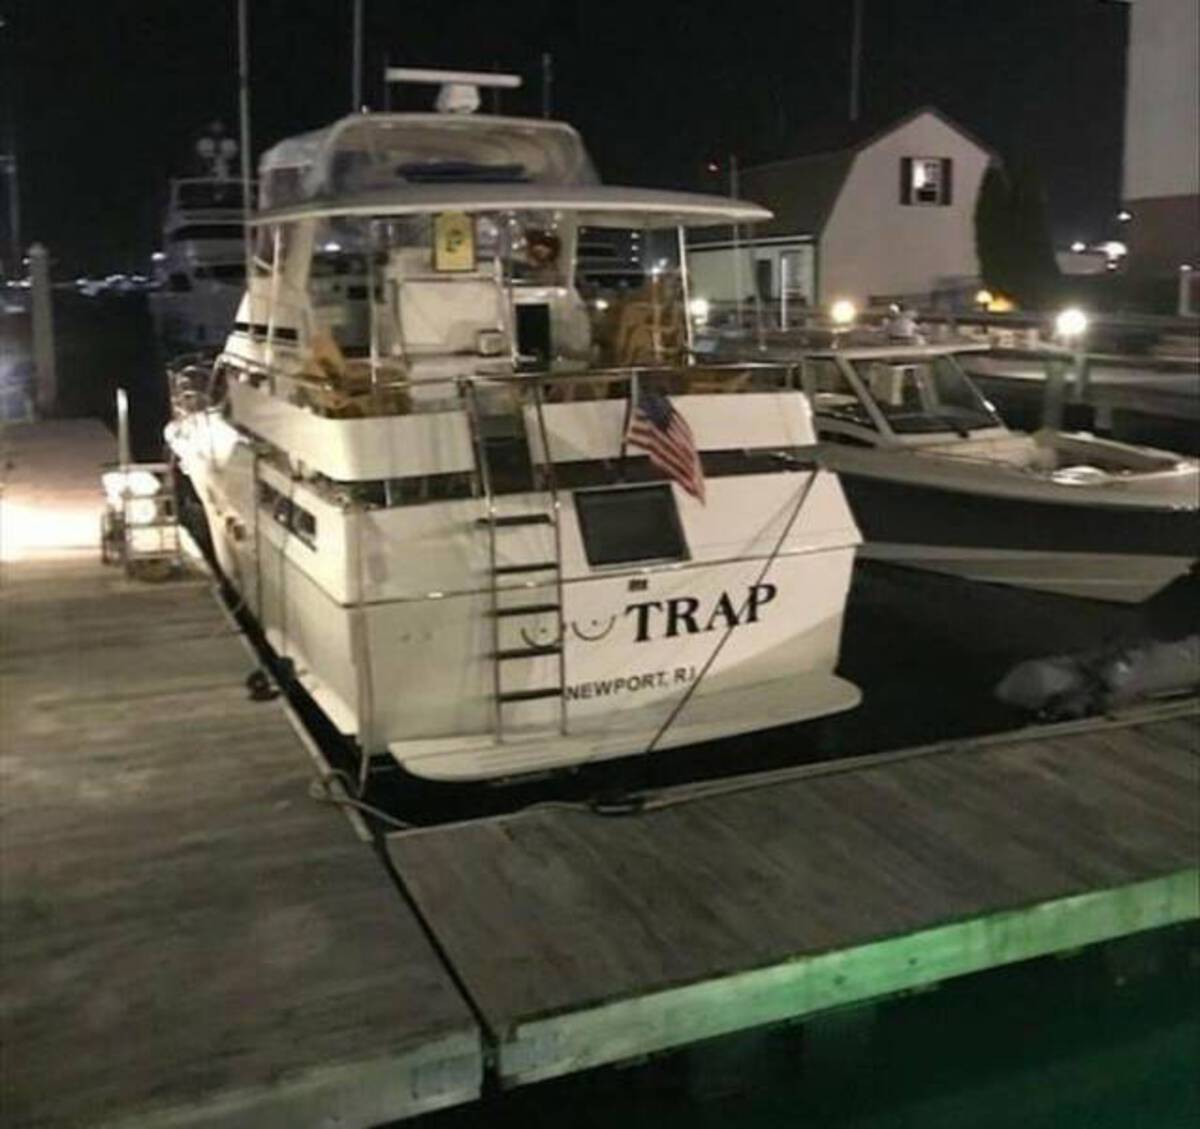 launch - Trap Newport, R